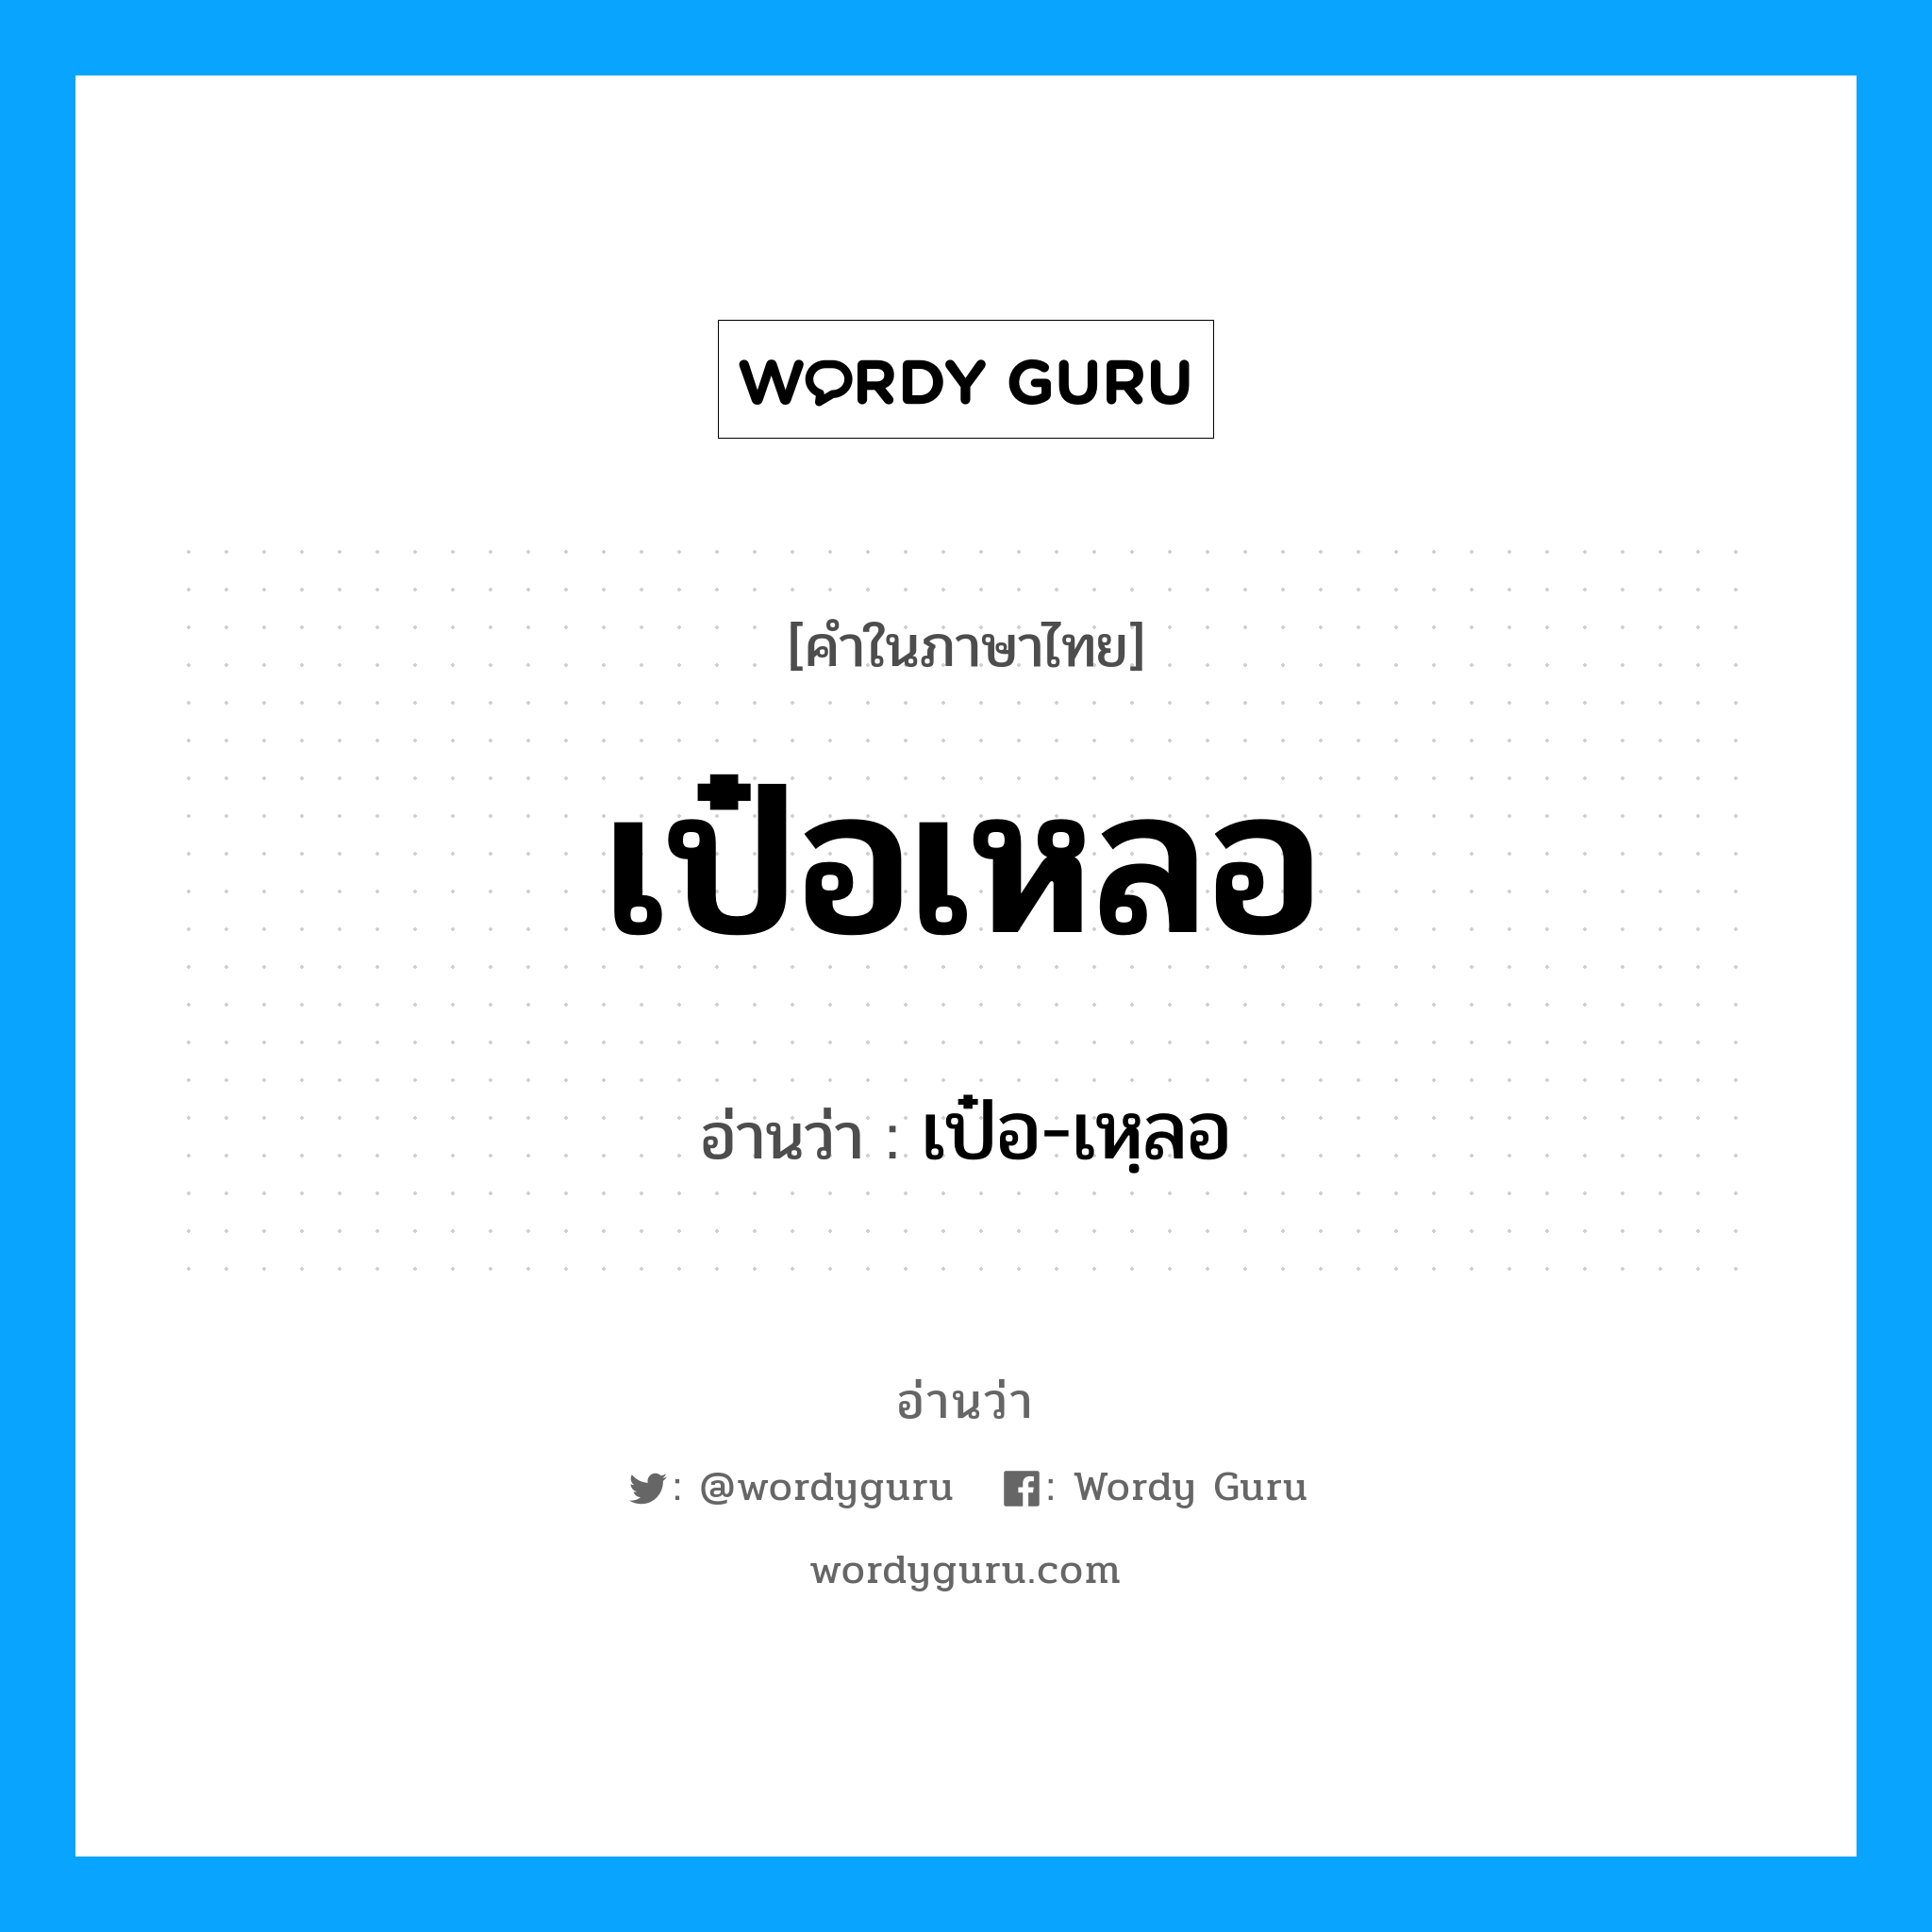 เป๋อ-เหฺลอ เป็นคำอ่านของคำไหน?, คำในภาษาไทย เป๋อ-เหฺลอ อ่านว่า เป๋อเหลอ